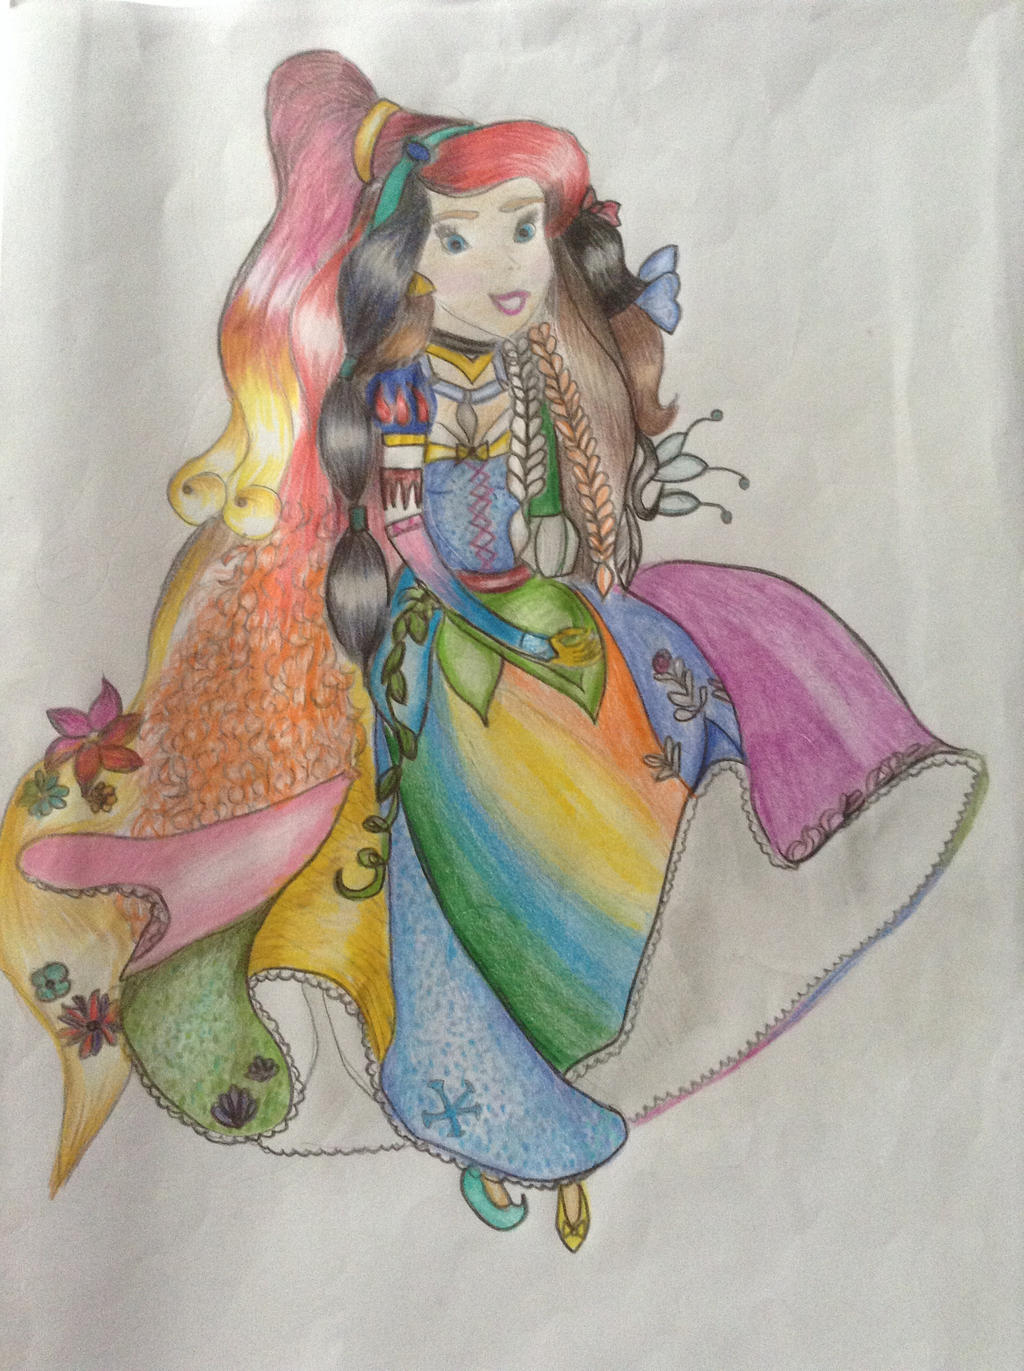 Disney Princess Fan Art by RealiseRealEyess on DeviantArt